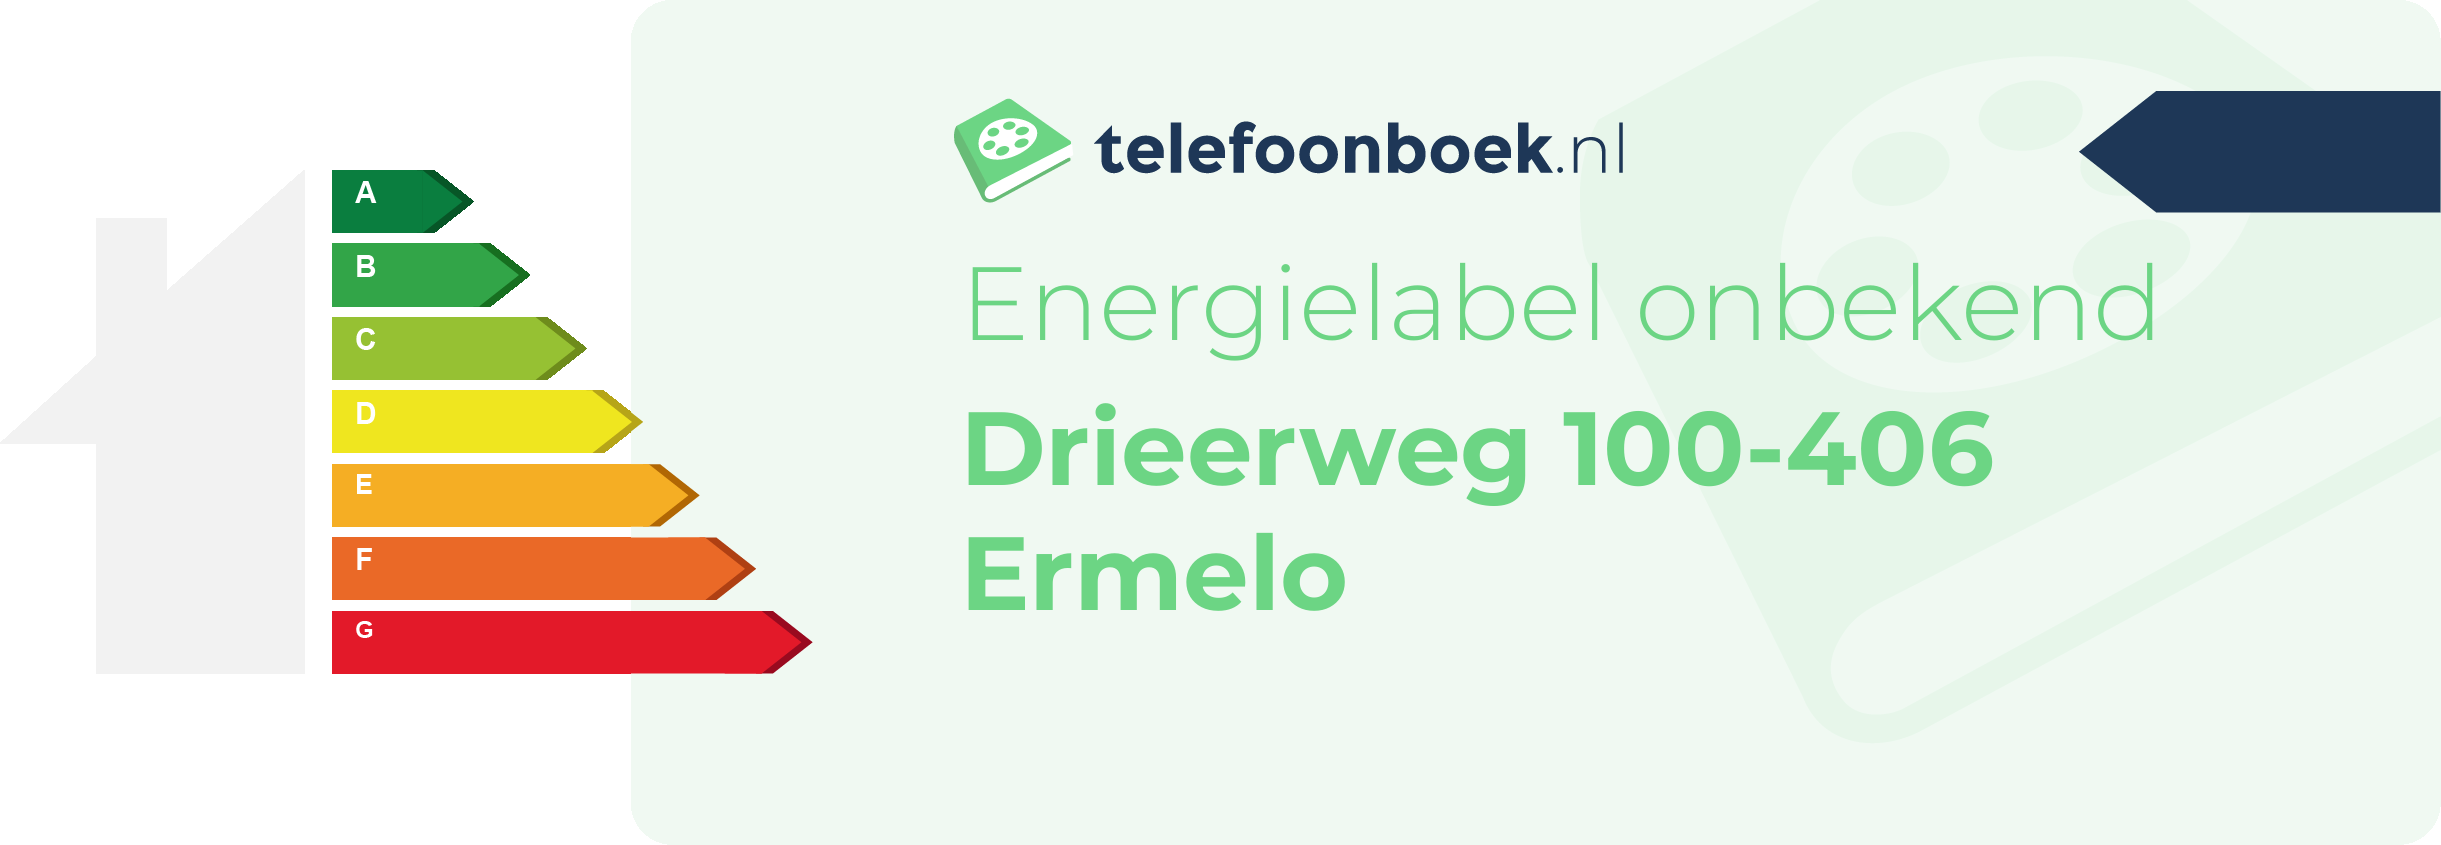 Energielabel Drieerweg 100-406 Ermelo